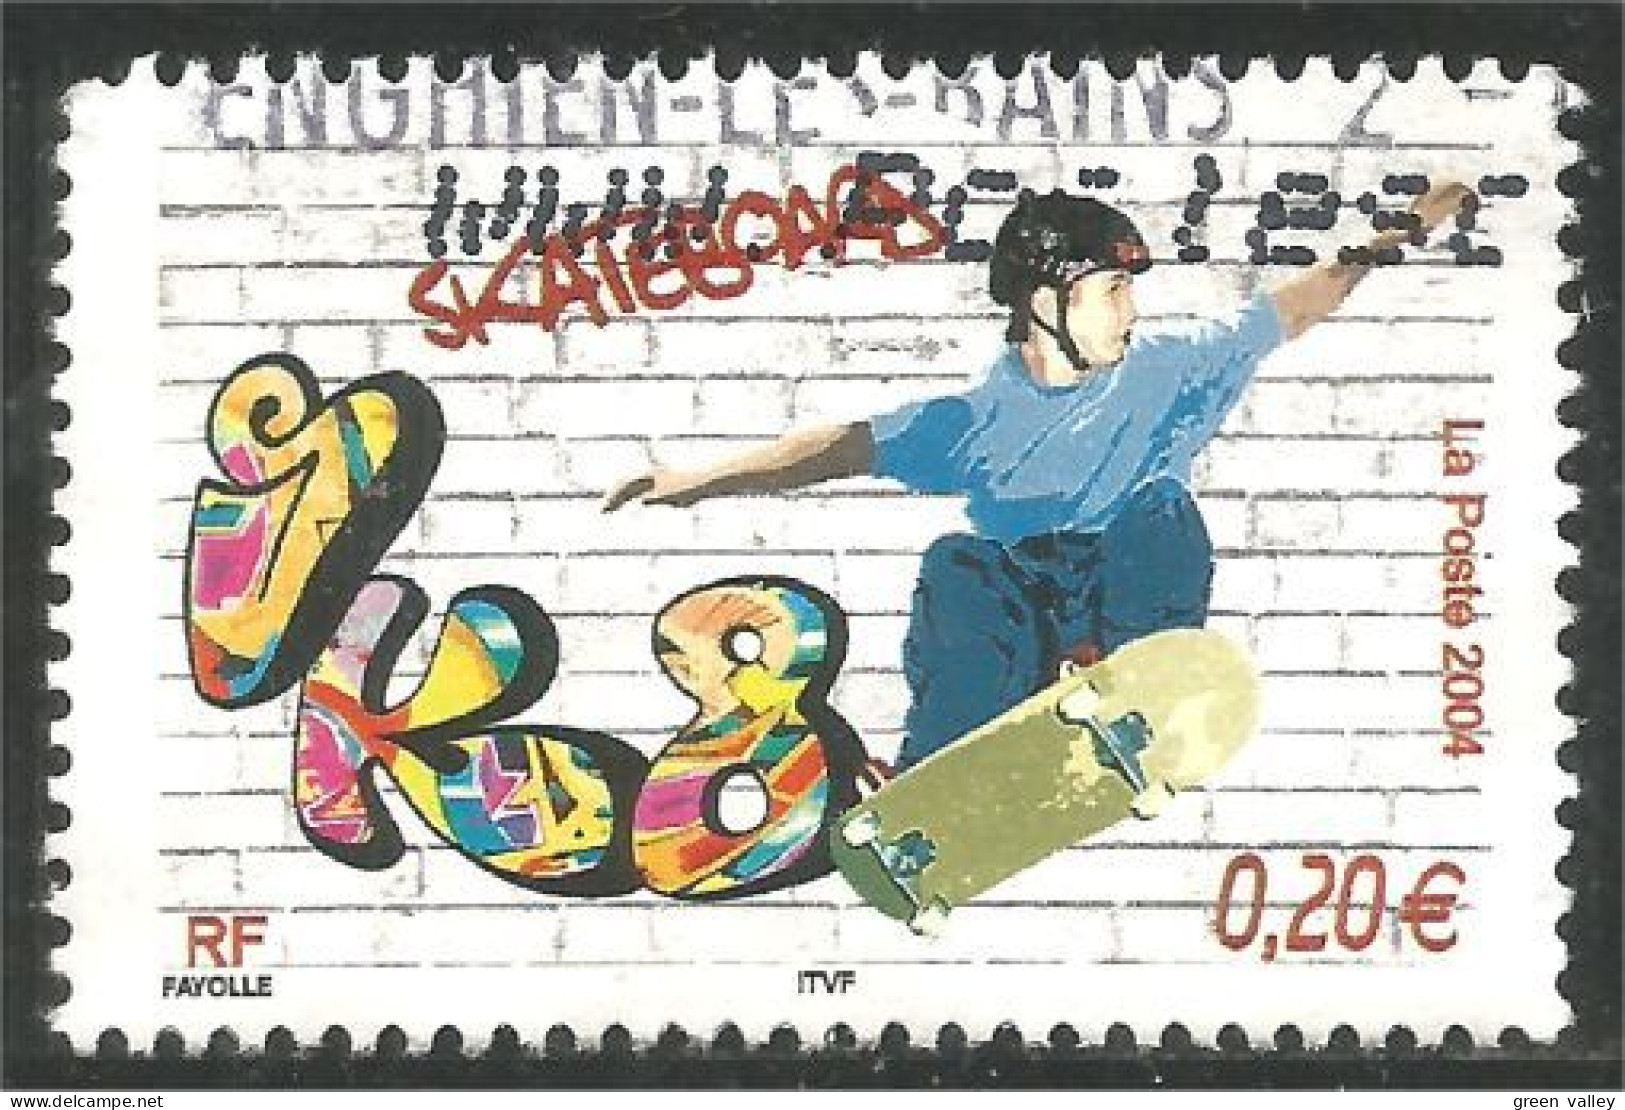 331eu-149 France Skateboard - Unclassified